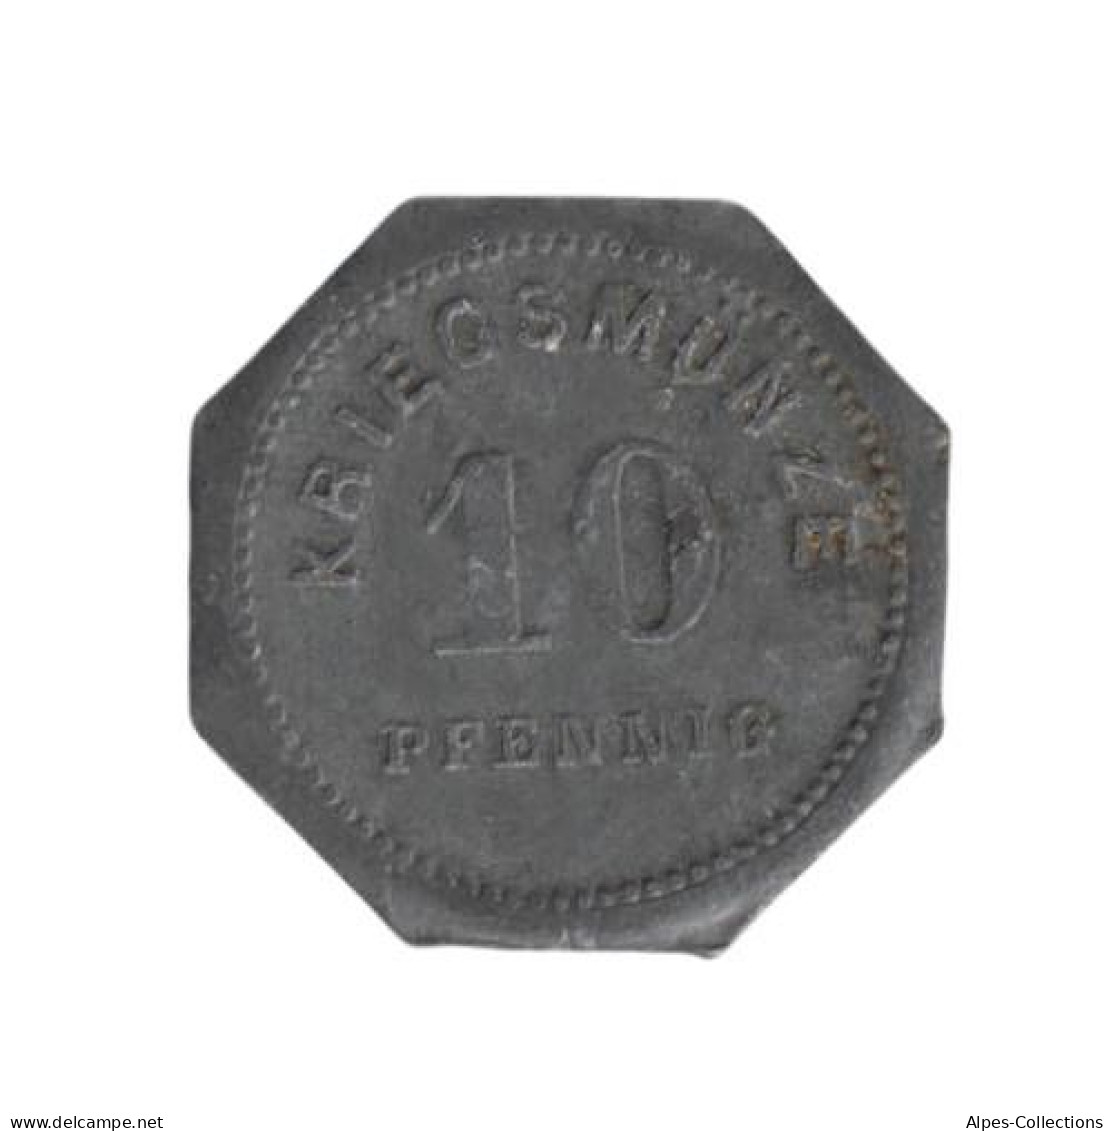 ALLEMAGNE - BENSHEIM - 10.1 - Monnaie De Nécessité - 10 Pfennig 1917 - Noodgeld